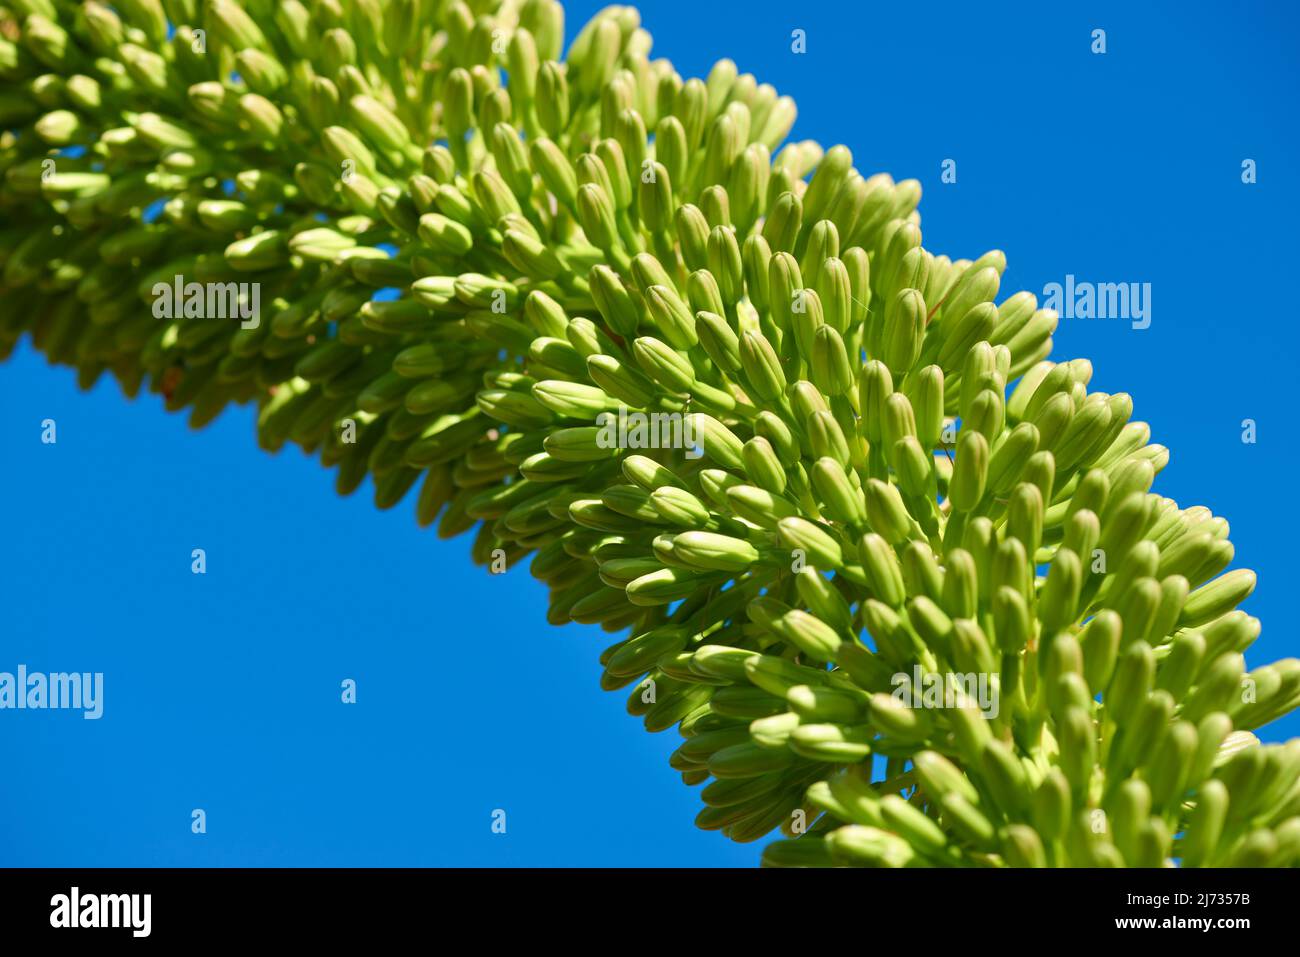 Agave flower stem against blue sky Stock Photo